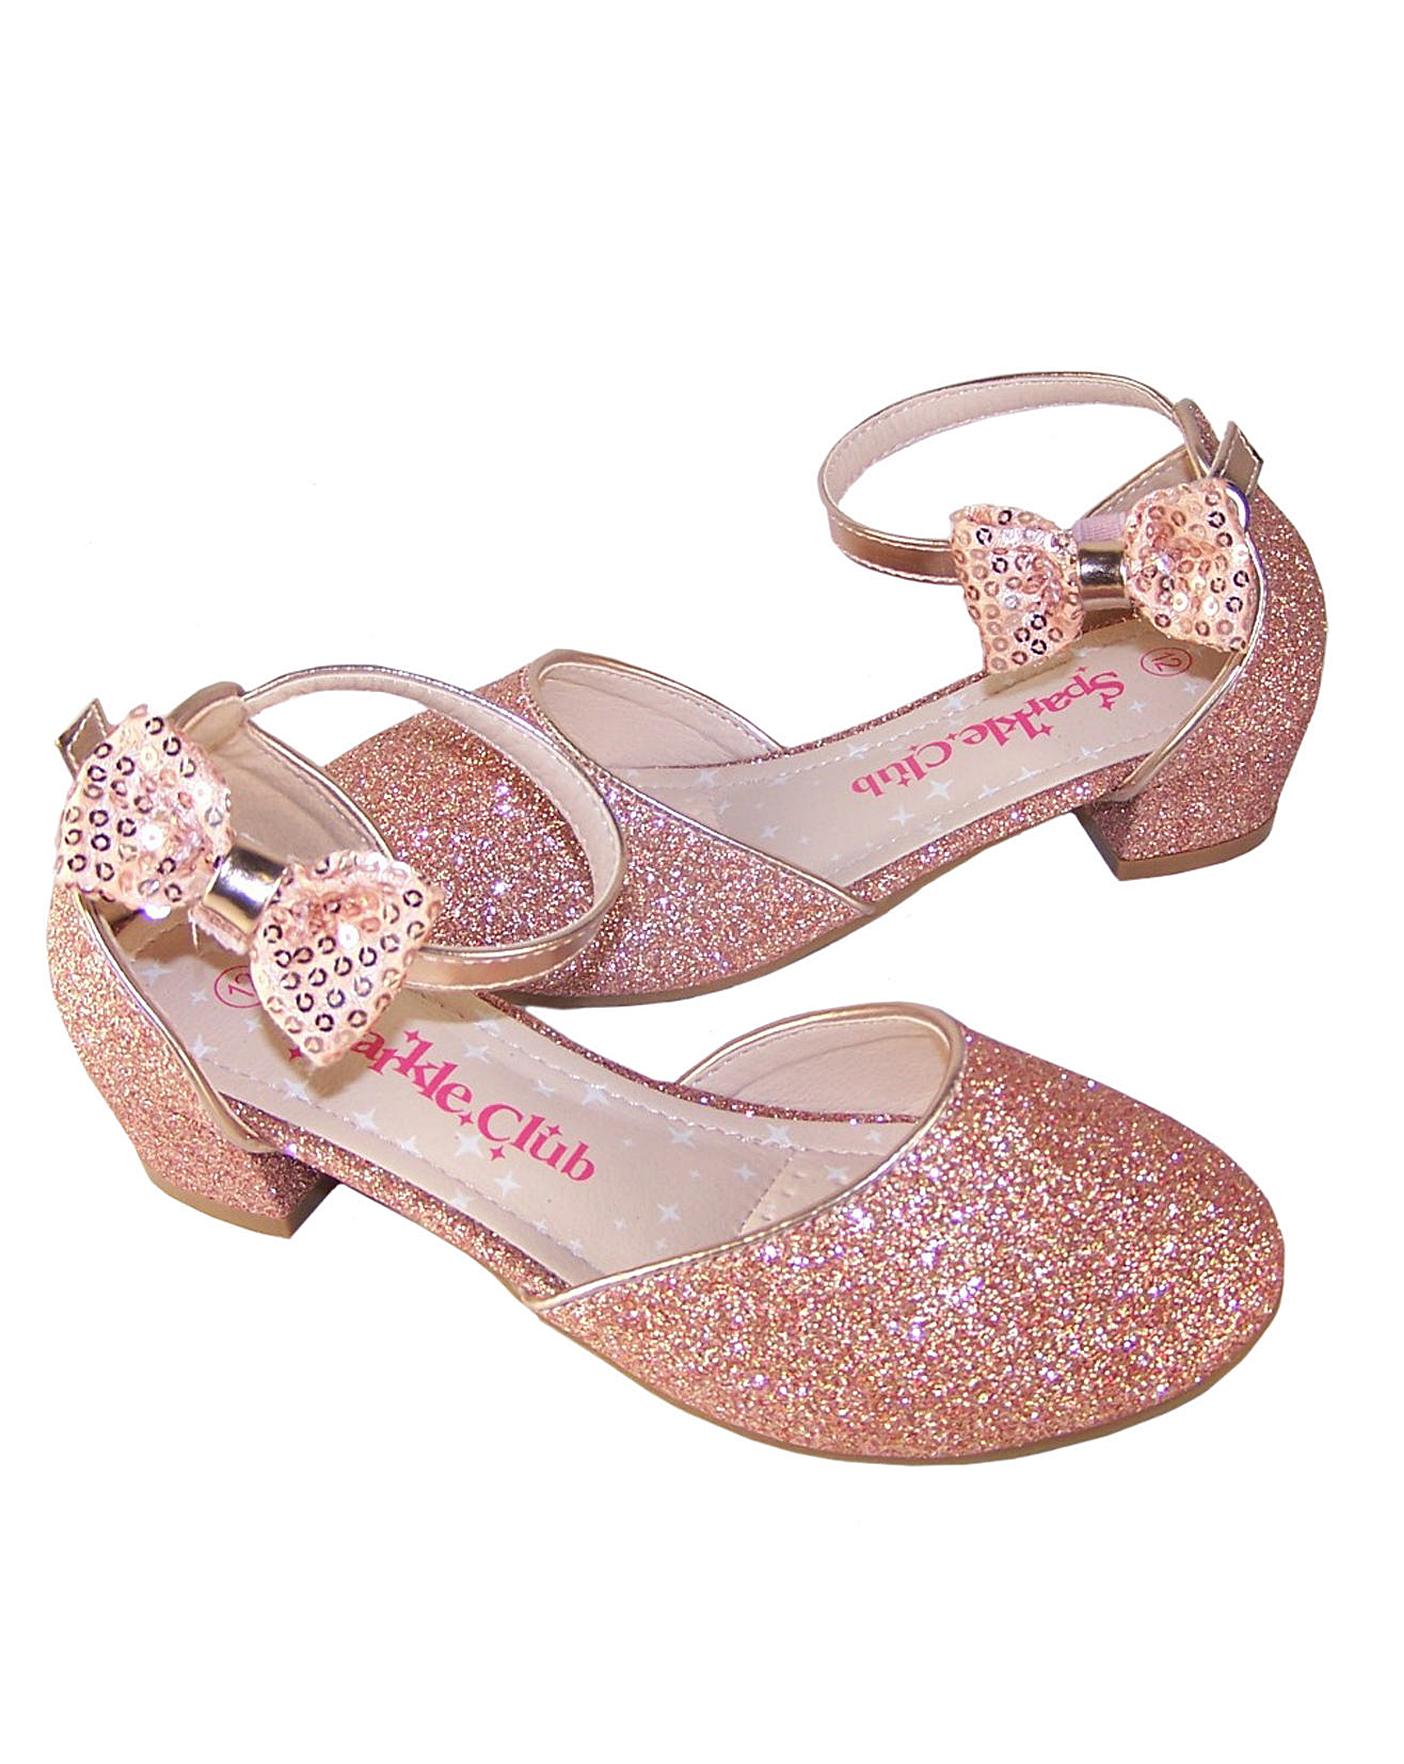 sparkle club shoes